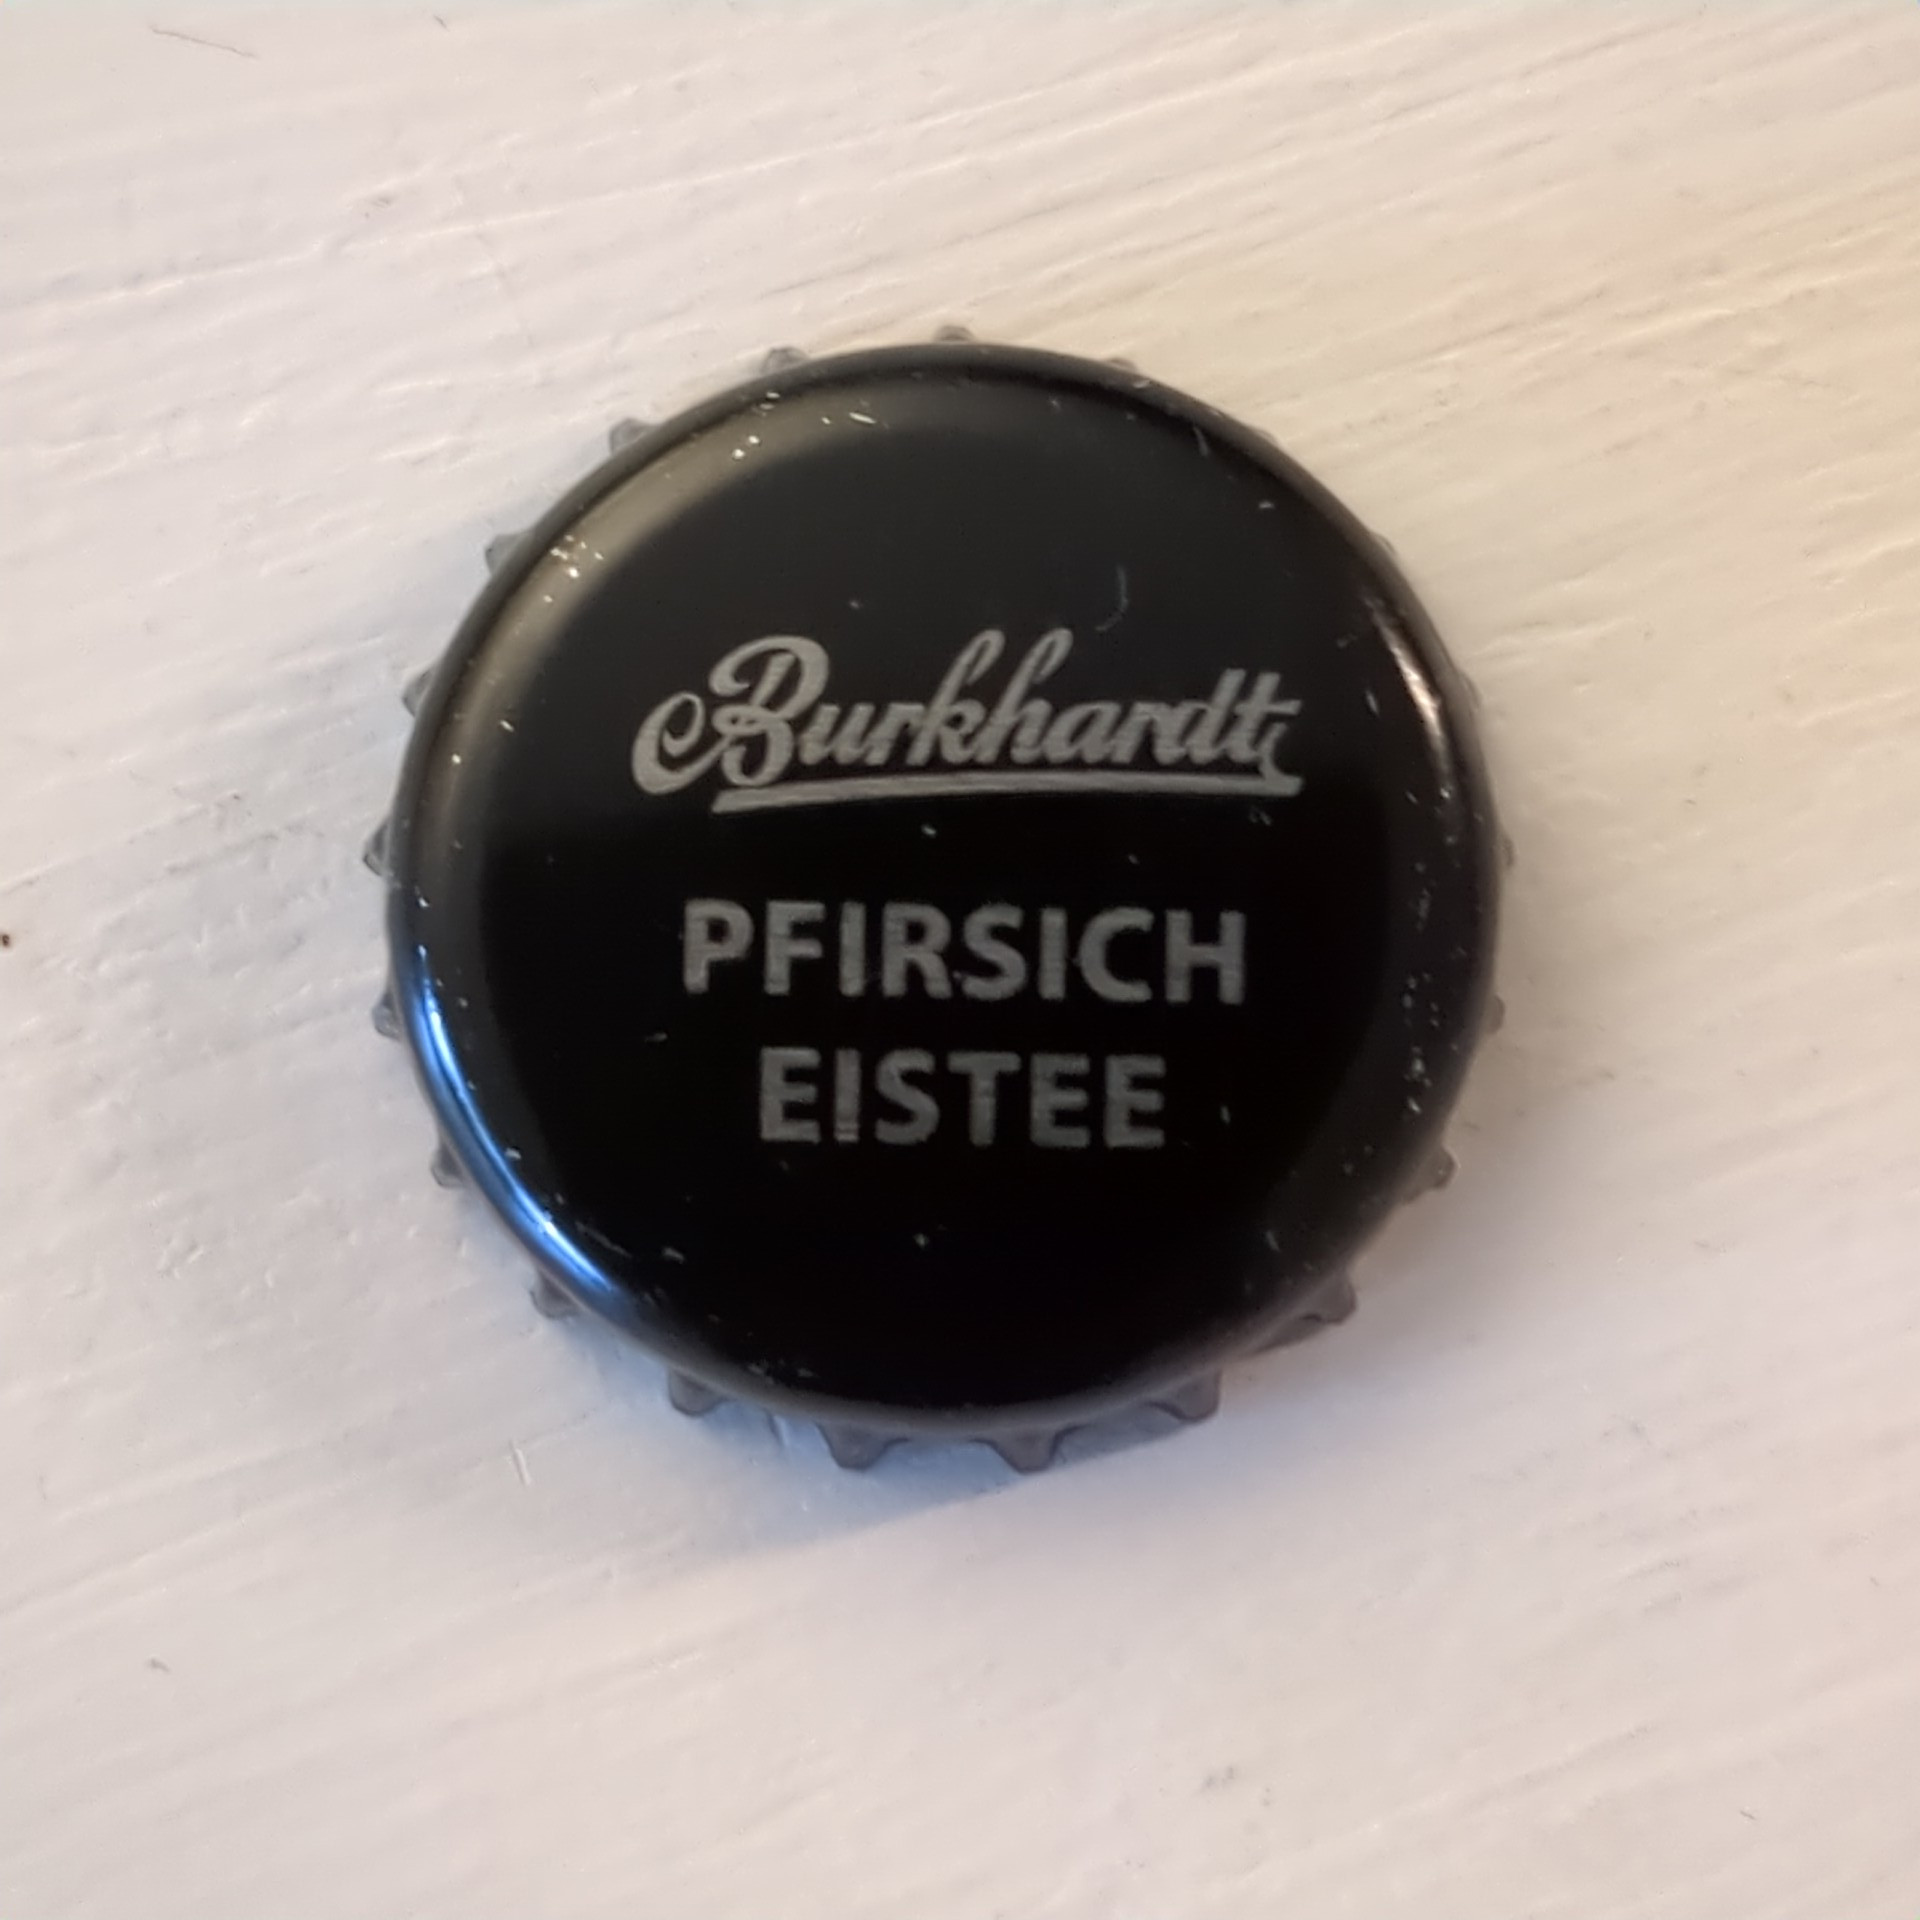 Burkhardt Pfirsich Eistee